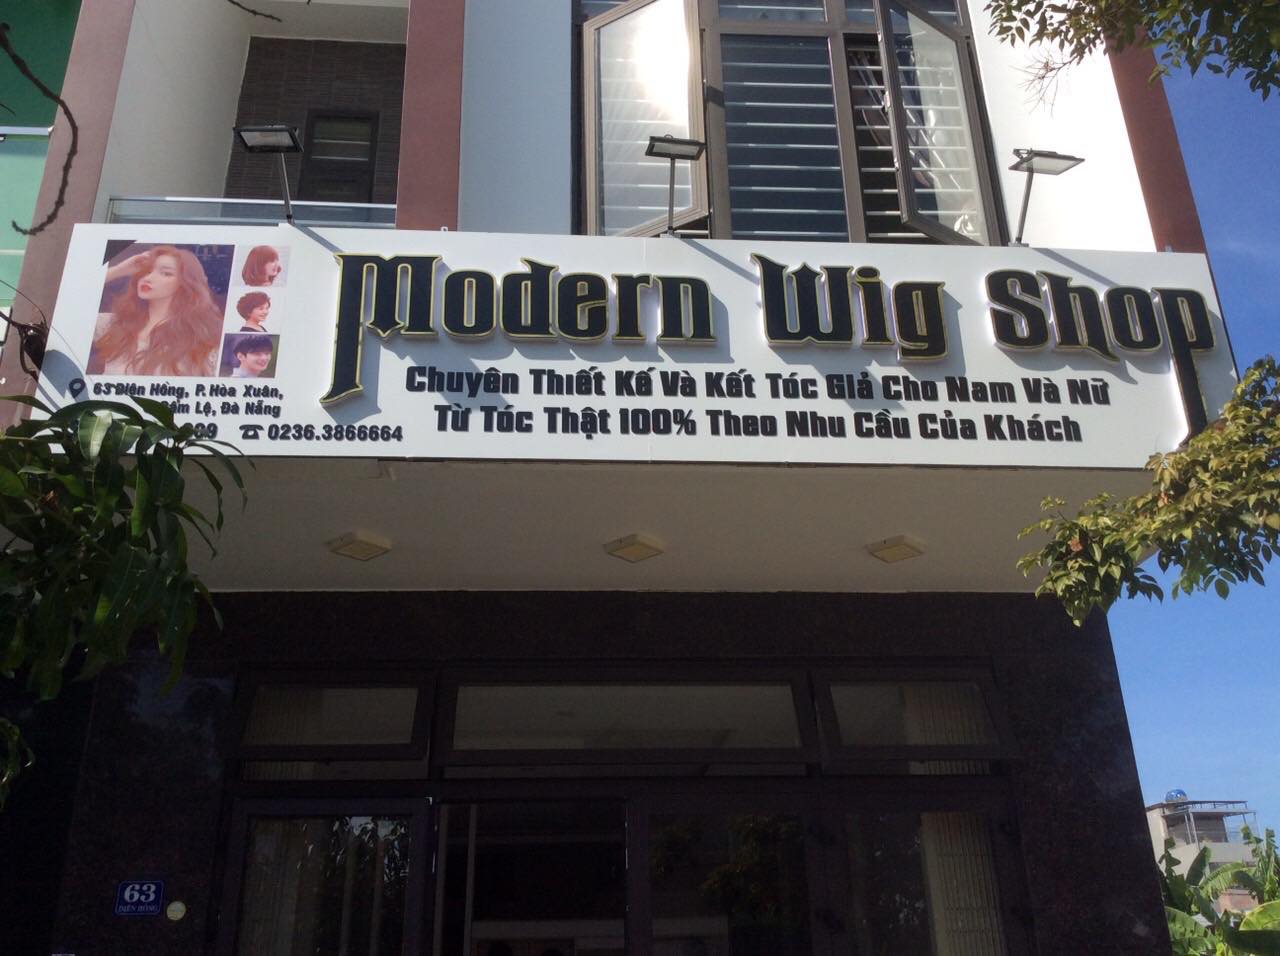 cửa hàng bán tóc giả - modernwig